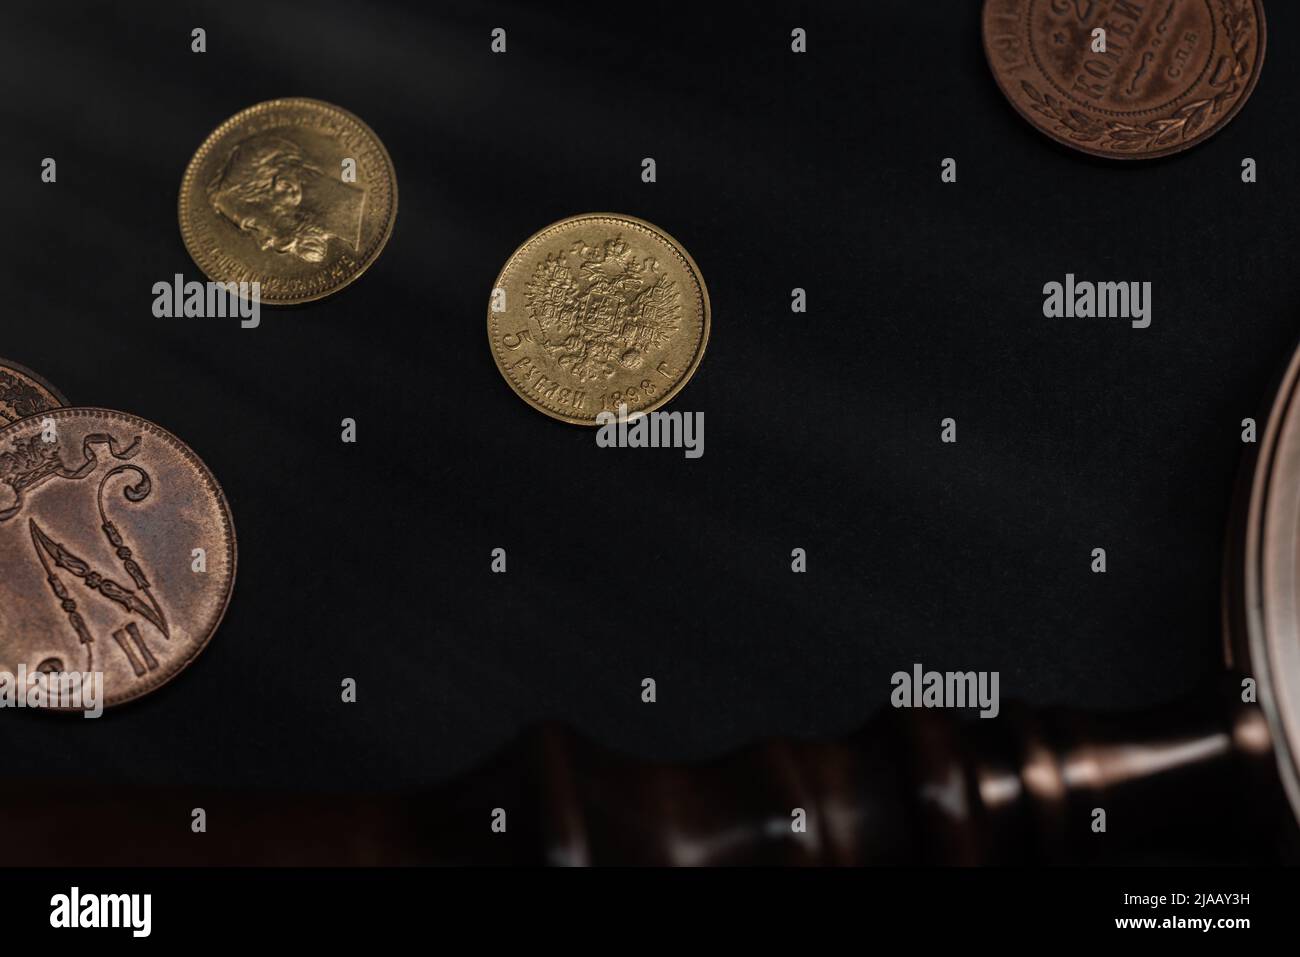 Immagini Stock - Numismatica. Vecchie Monete Da Collezione Realizzate In  Rame Su Un Tavolo Di Legno. Vista Dall'alto. Sfondo Nero.. Image 137420795